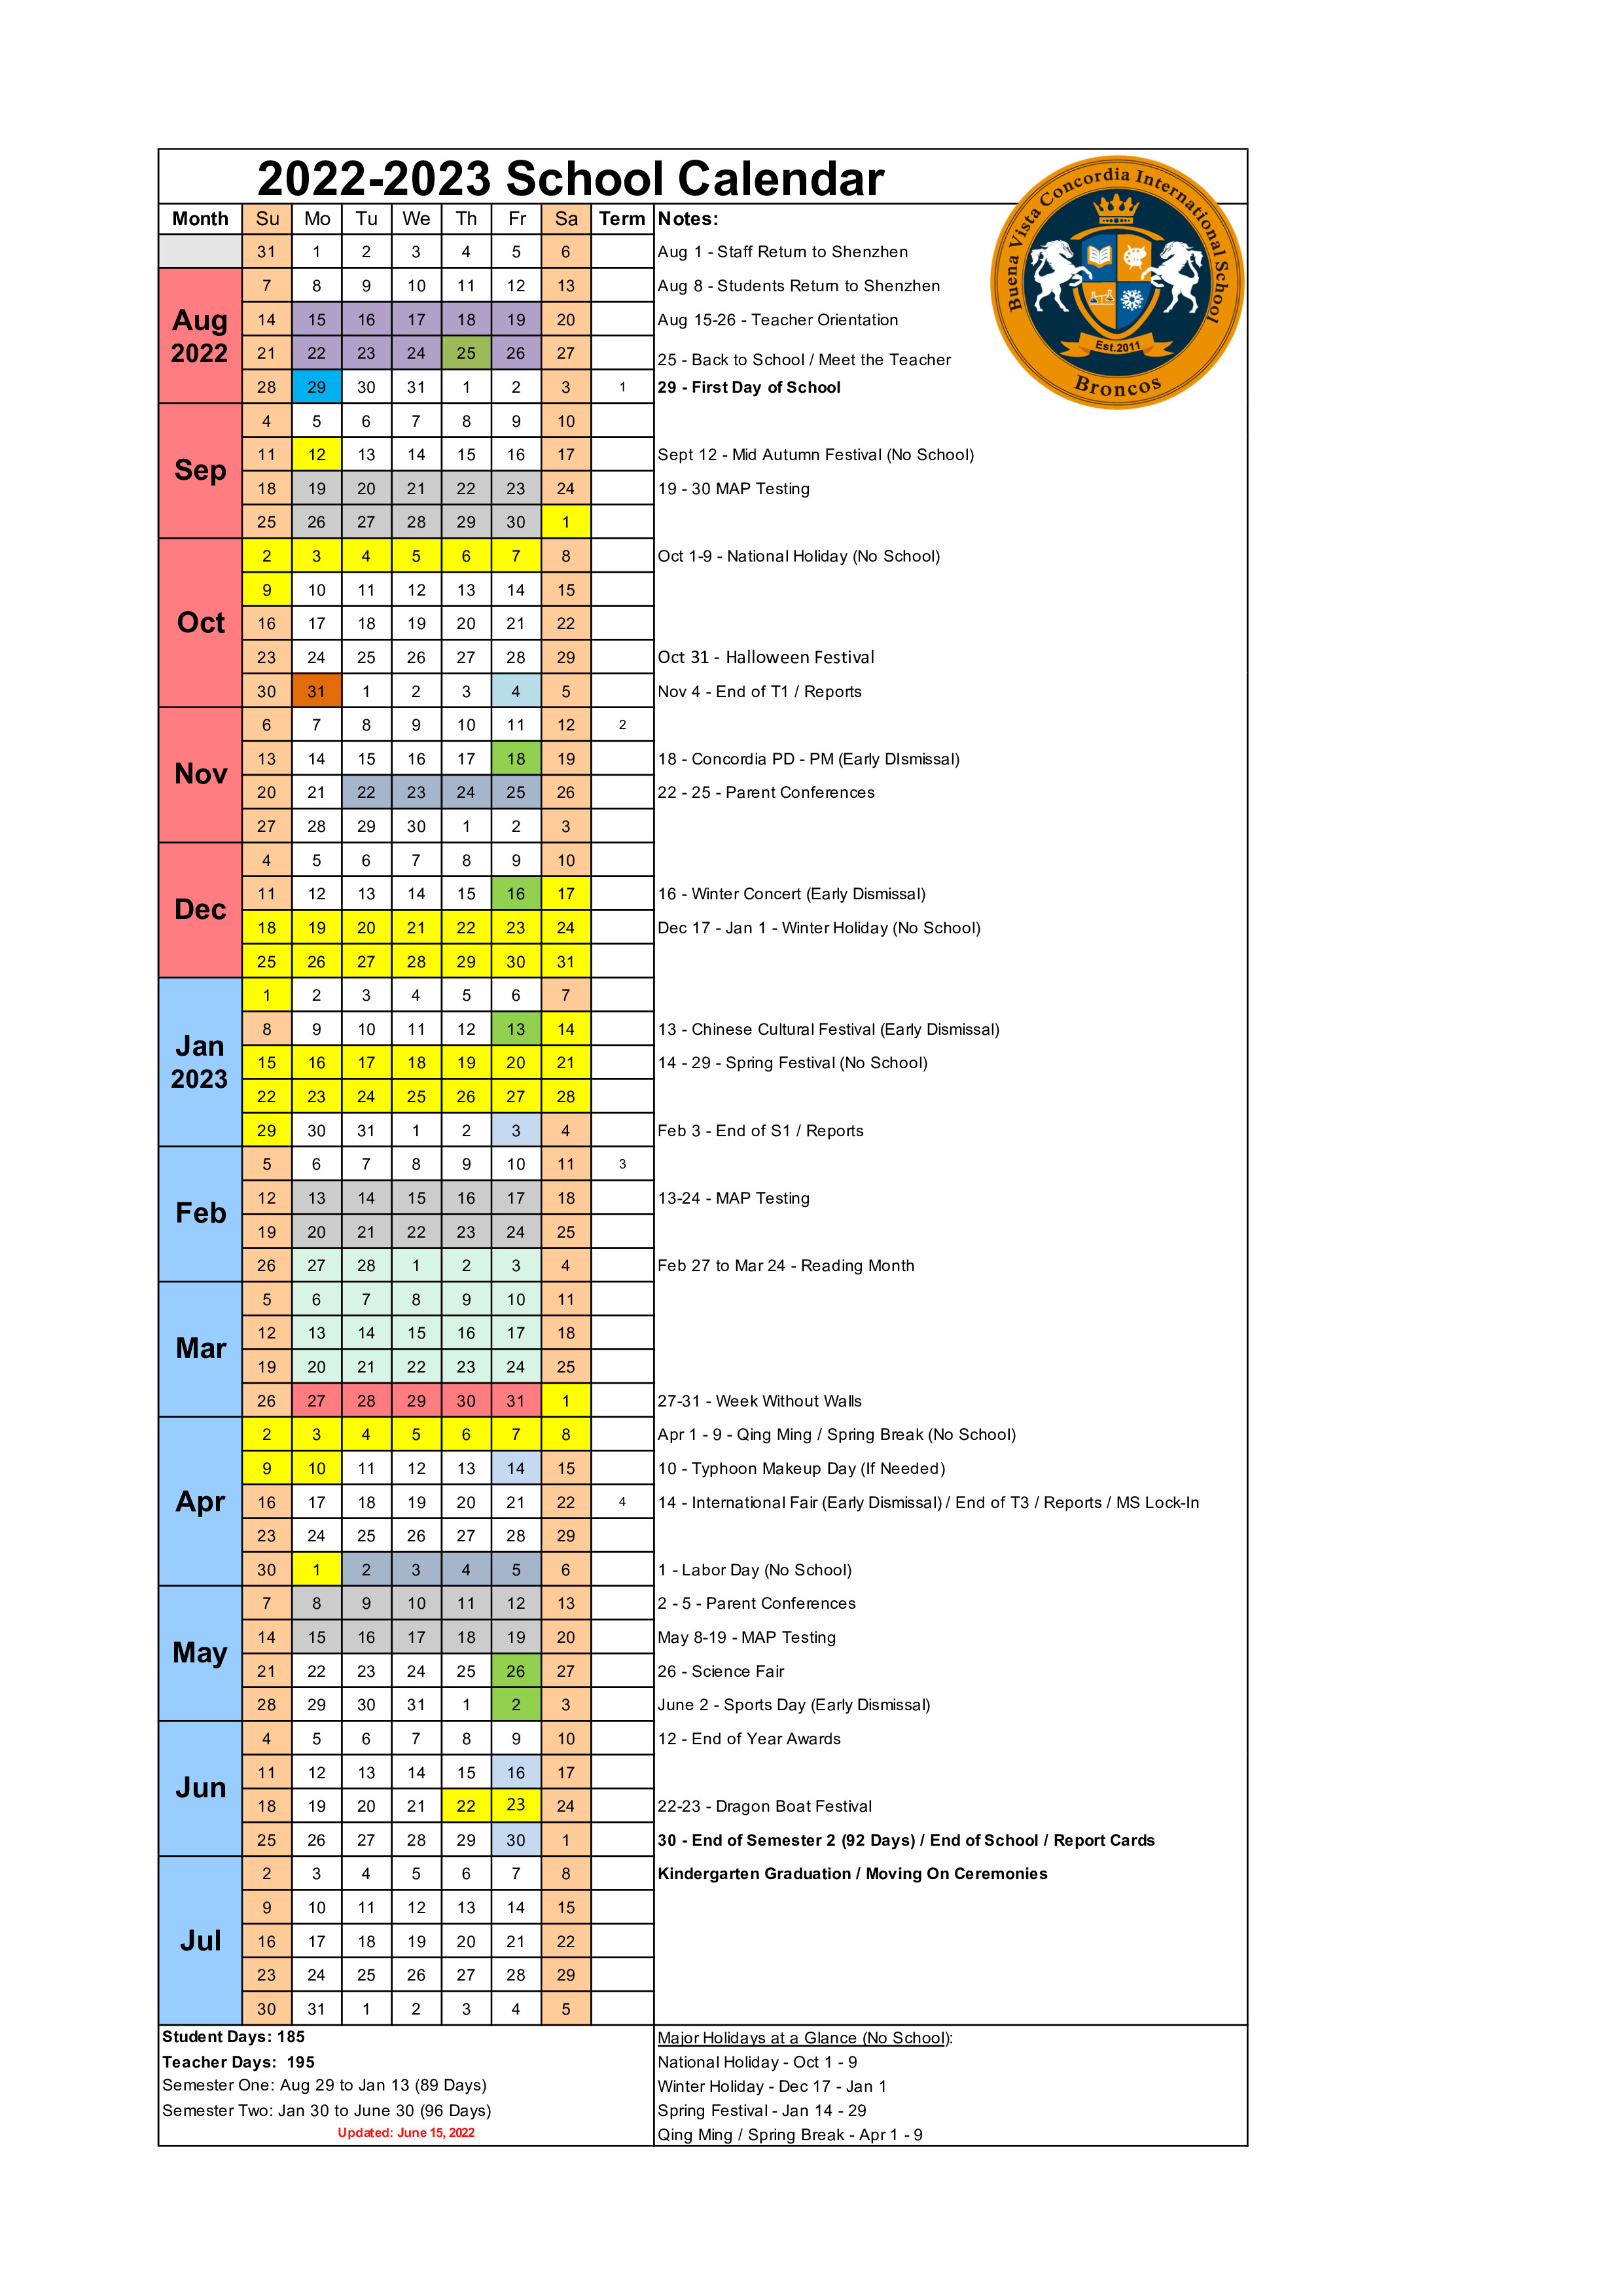 曦城协同国际学校(BCIS) 官网 School Calendar 20222023